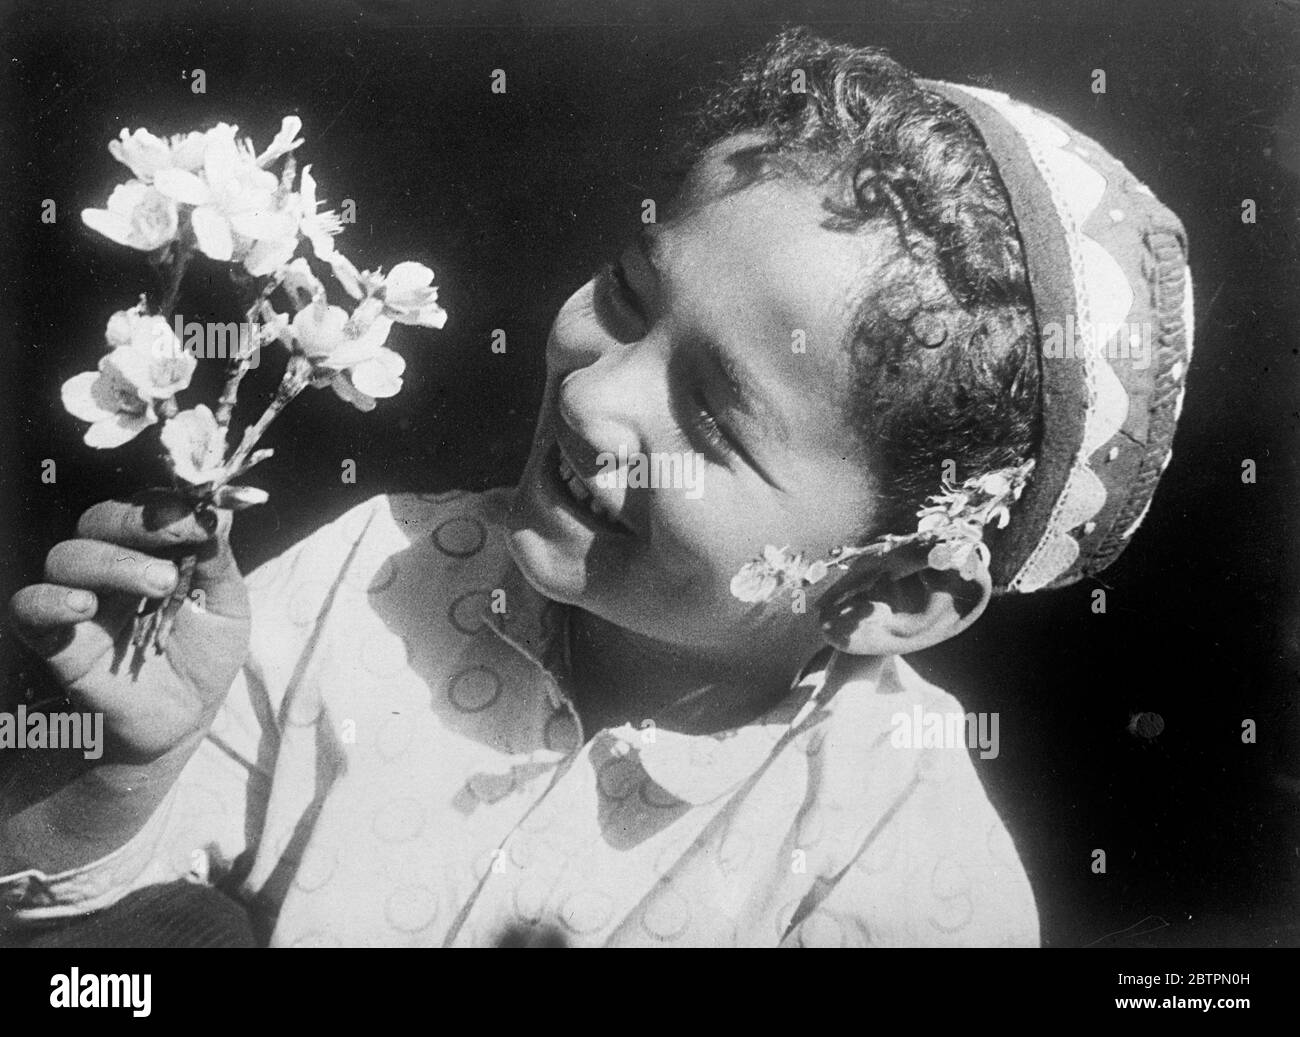 Lächeln Sie für die sommerliche Fülle. Der Sommer mit seinen Mandel-, Aprikose- und Pistazien-Blüten ist in das sowjetische Mittelasien gekommen und dieser lachende, lockige usbekische Boyd hat ein einladendes Lächeln für das Spray der Aprikosenblüte, das er aus dem Ast gezupft hat. 24. April 1937 [etwa?] Stockfoto